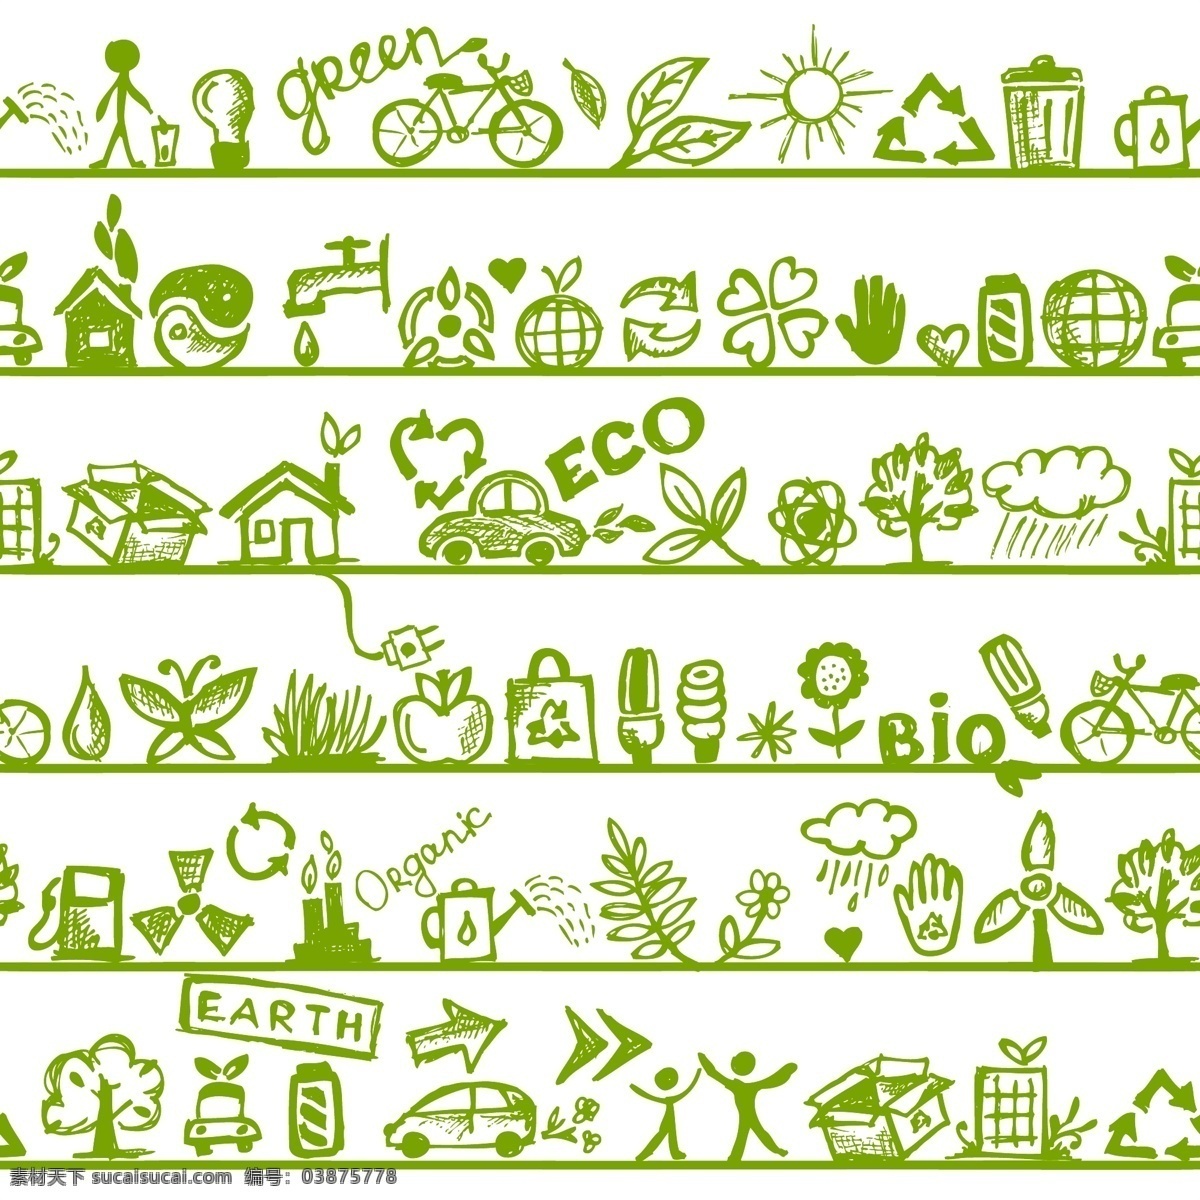 生态 环保 元素 创意地球 环保时尚 绿色环保 商标 手绘 英文简笔画 手绘绿色生活 矢量图